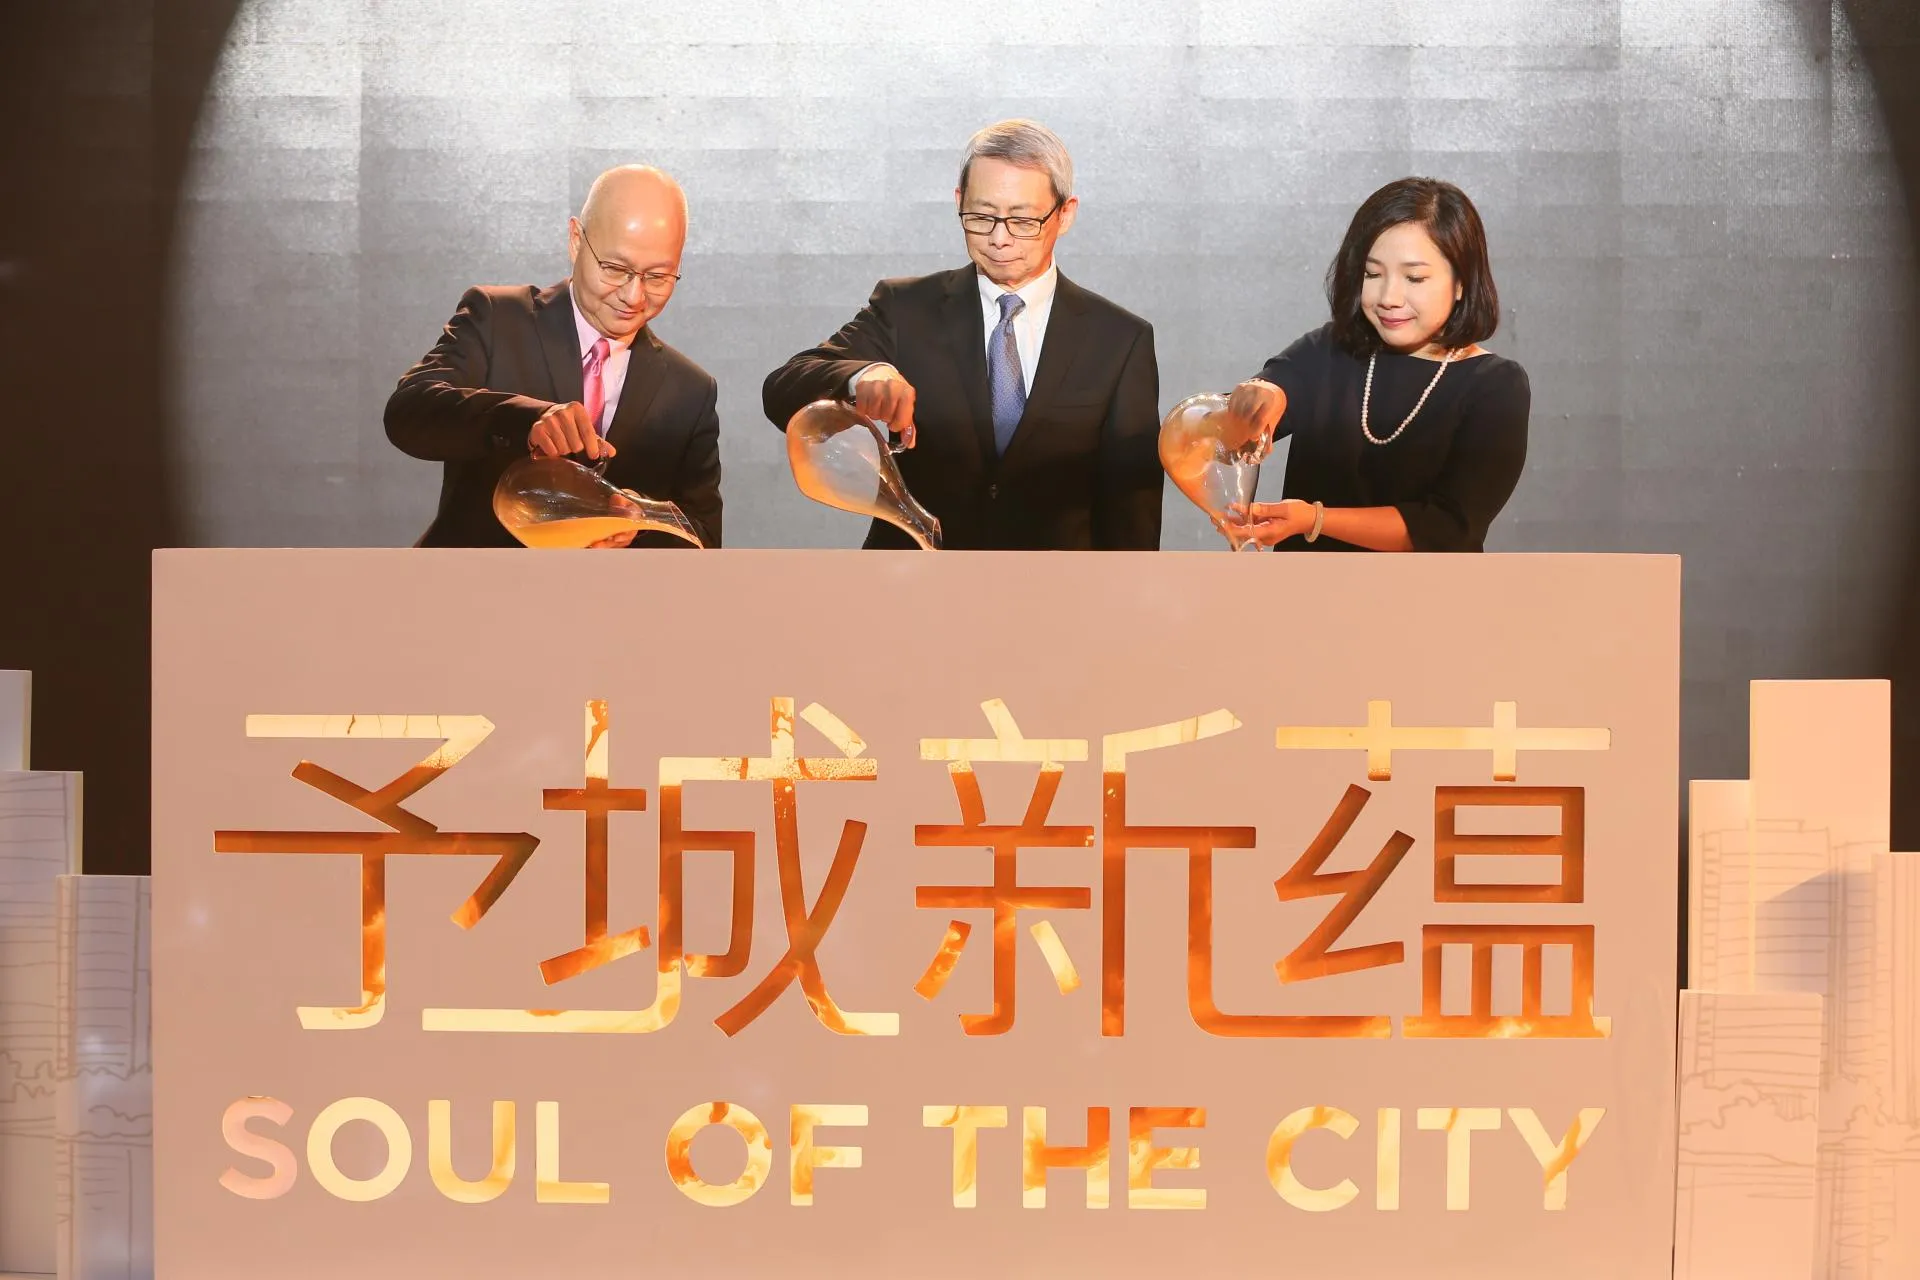 新世界中国发布全新品牌承诺“予城新蕴”。